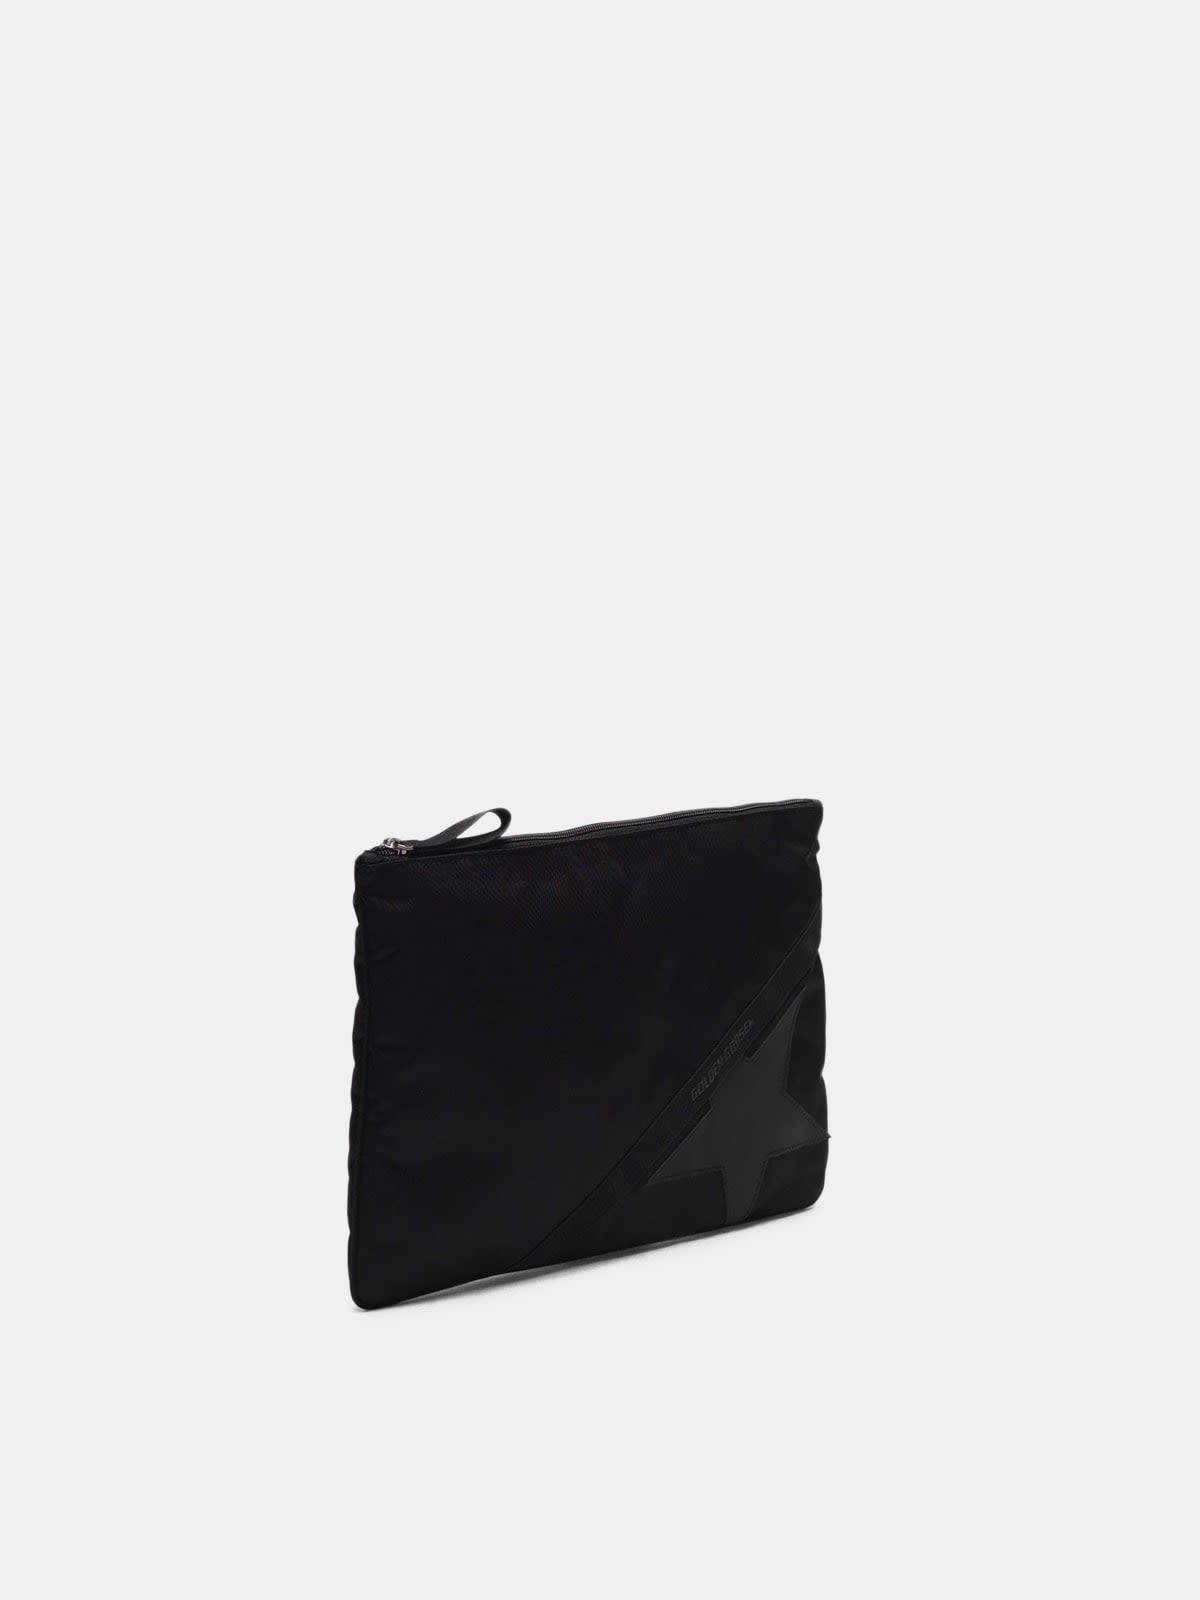 Large black nylon Journey pouch